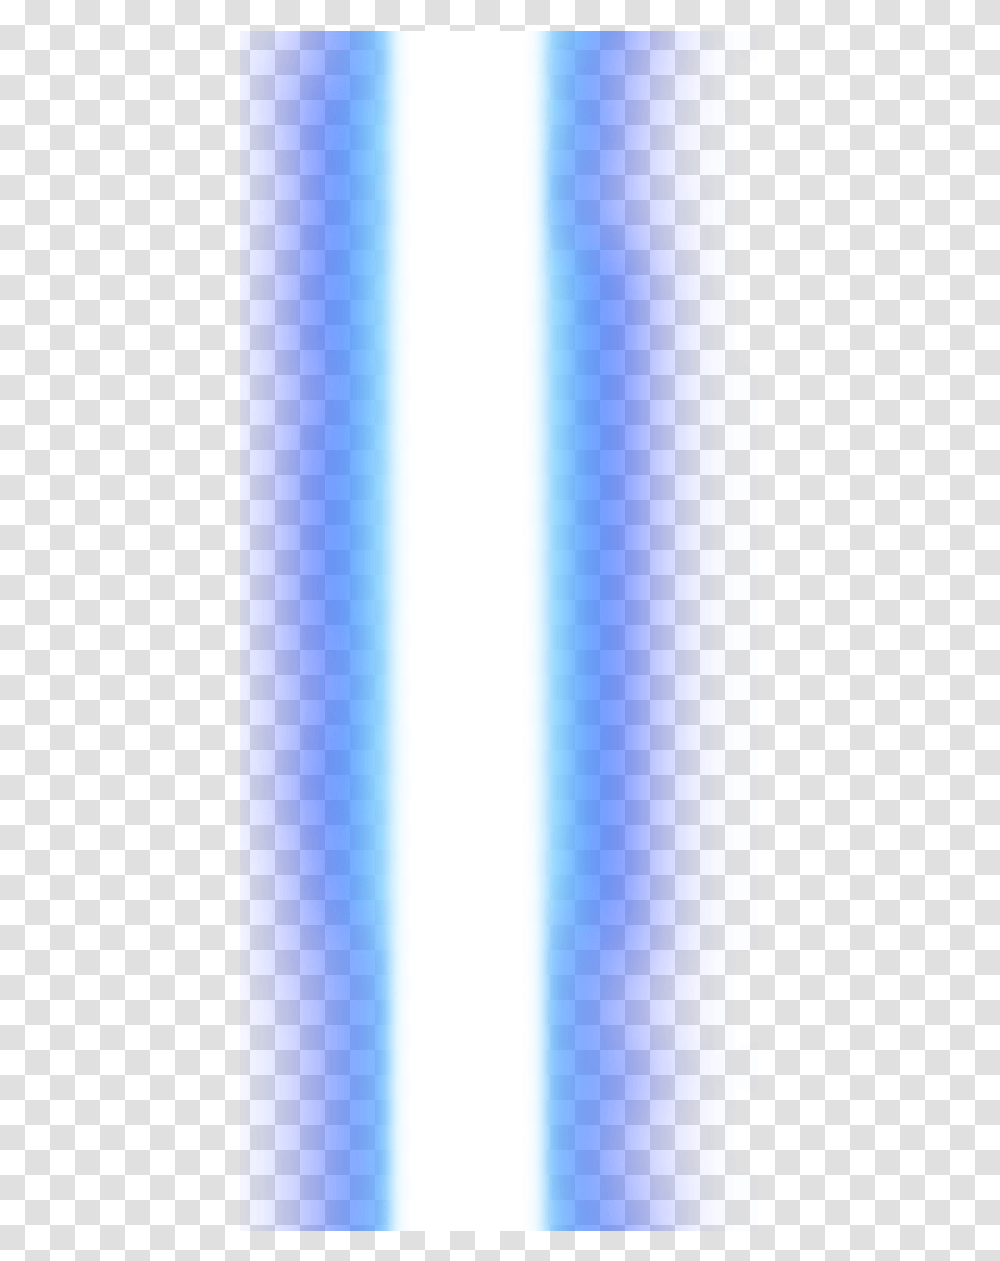 Star Wars Lightsaber Vector Free Download, Logo, Trademark Transparent Png